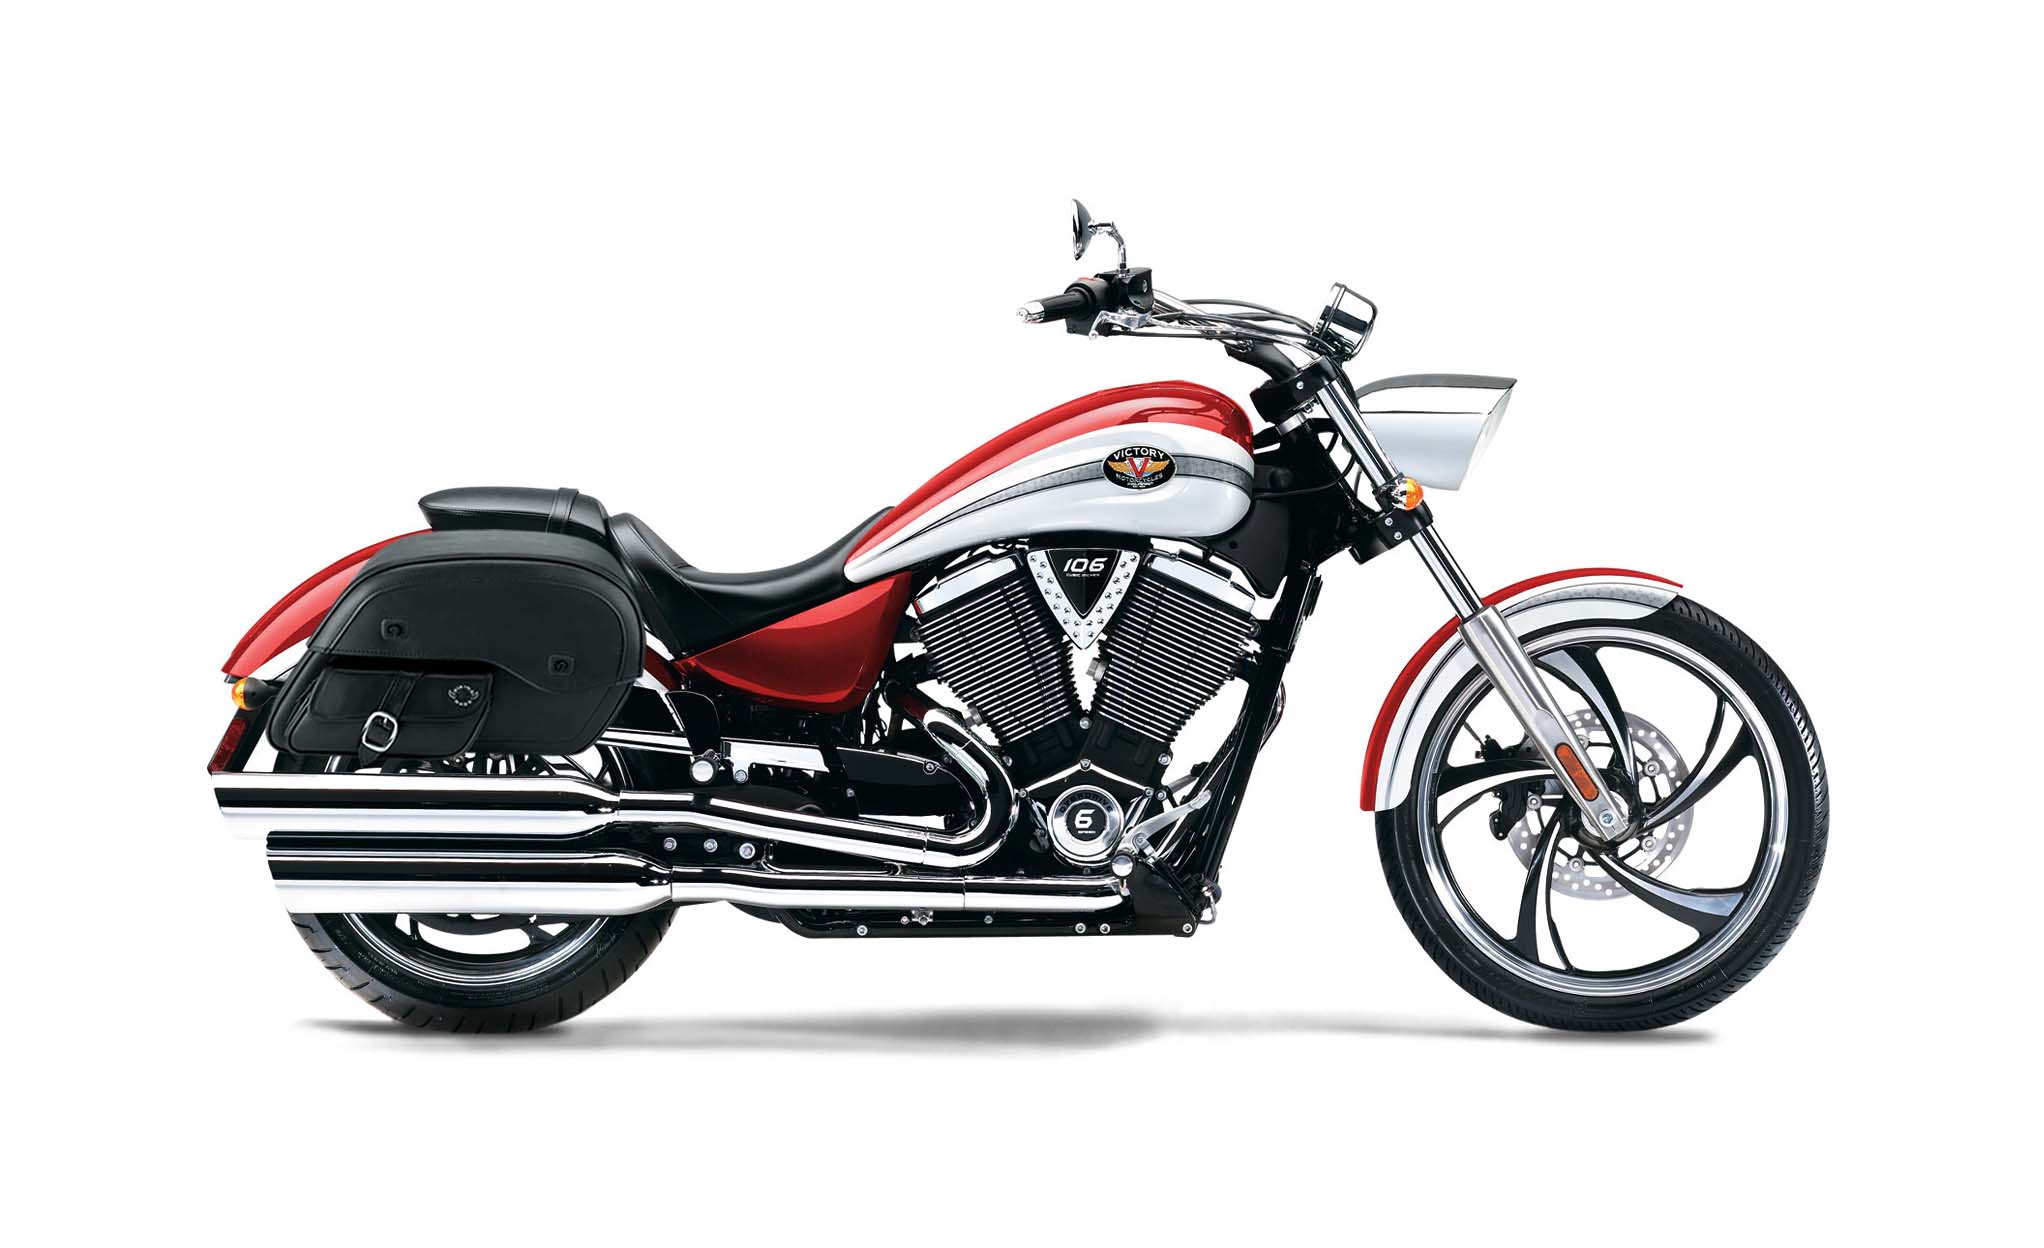 Viking Dweller Side Pocket Large Victory Vegas Leather Motorcycle Saddlebags on Bike Photo @expand